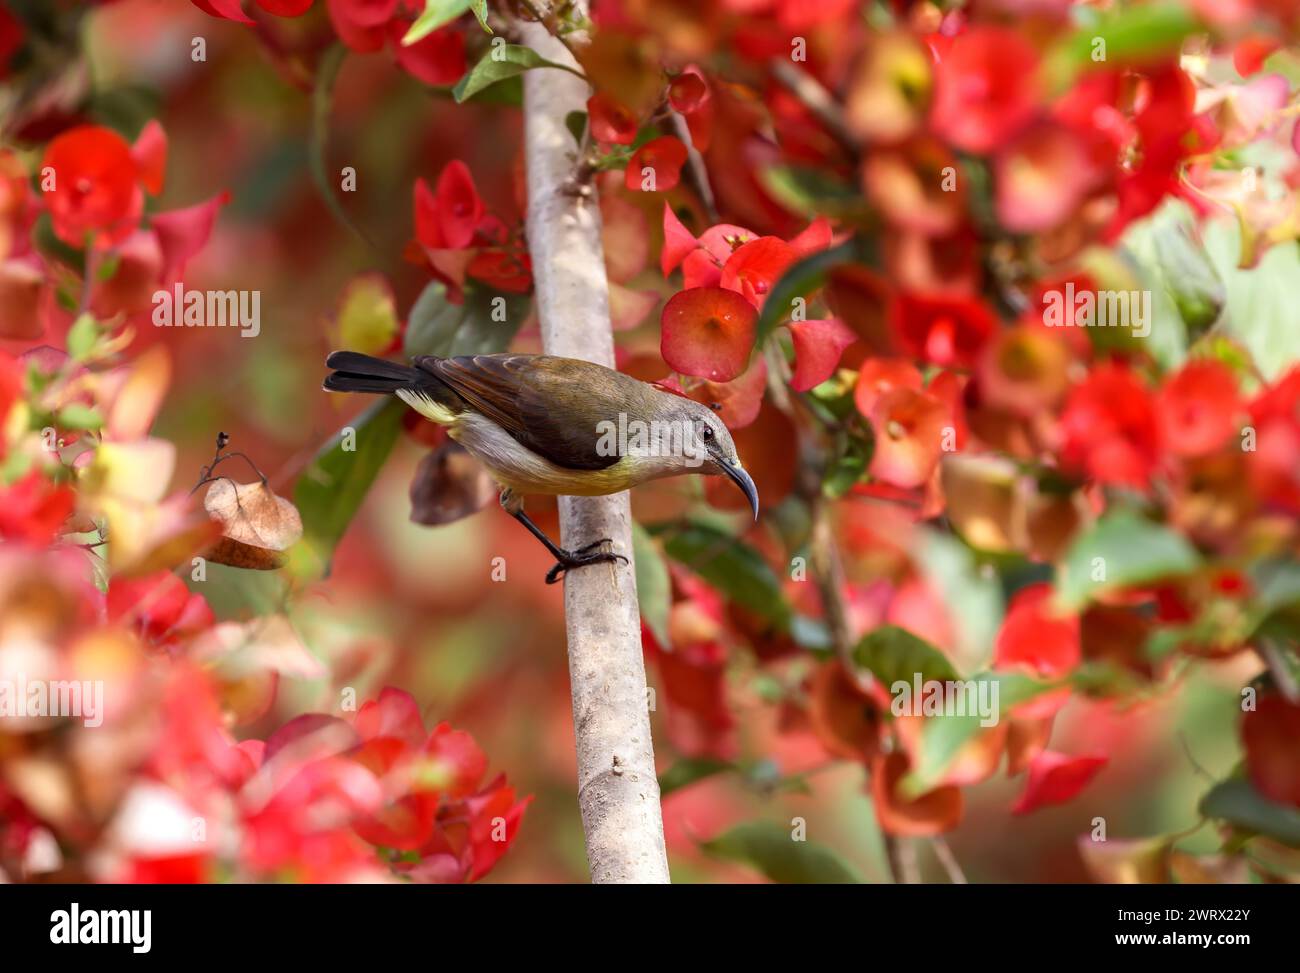 sonnenvogel auf Blume. Dieses Foto wurde aus Bangladesch gemacht. Stockfoto